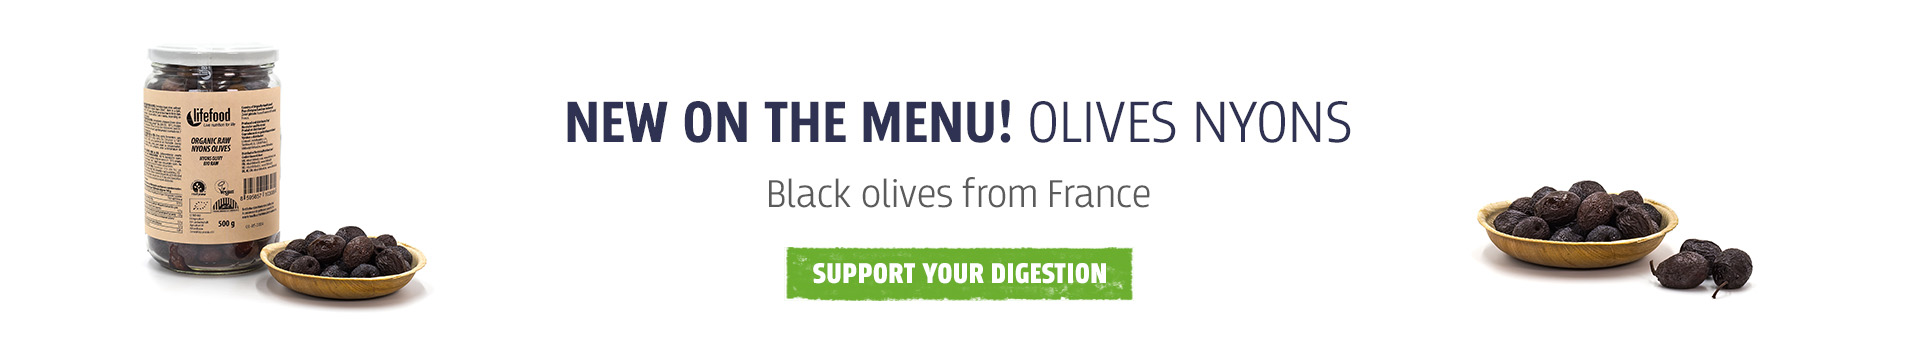 Nyons olive